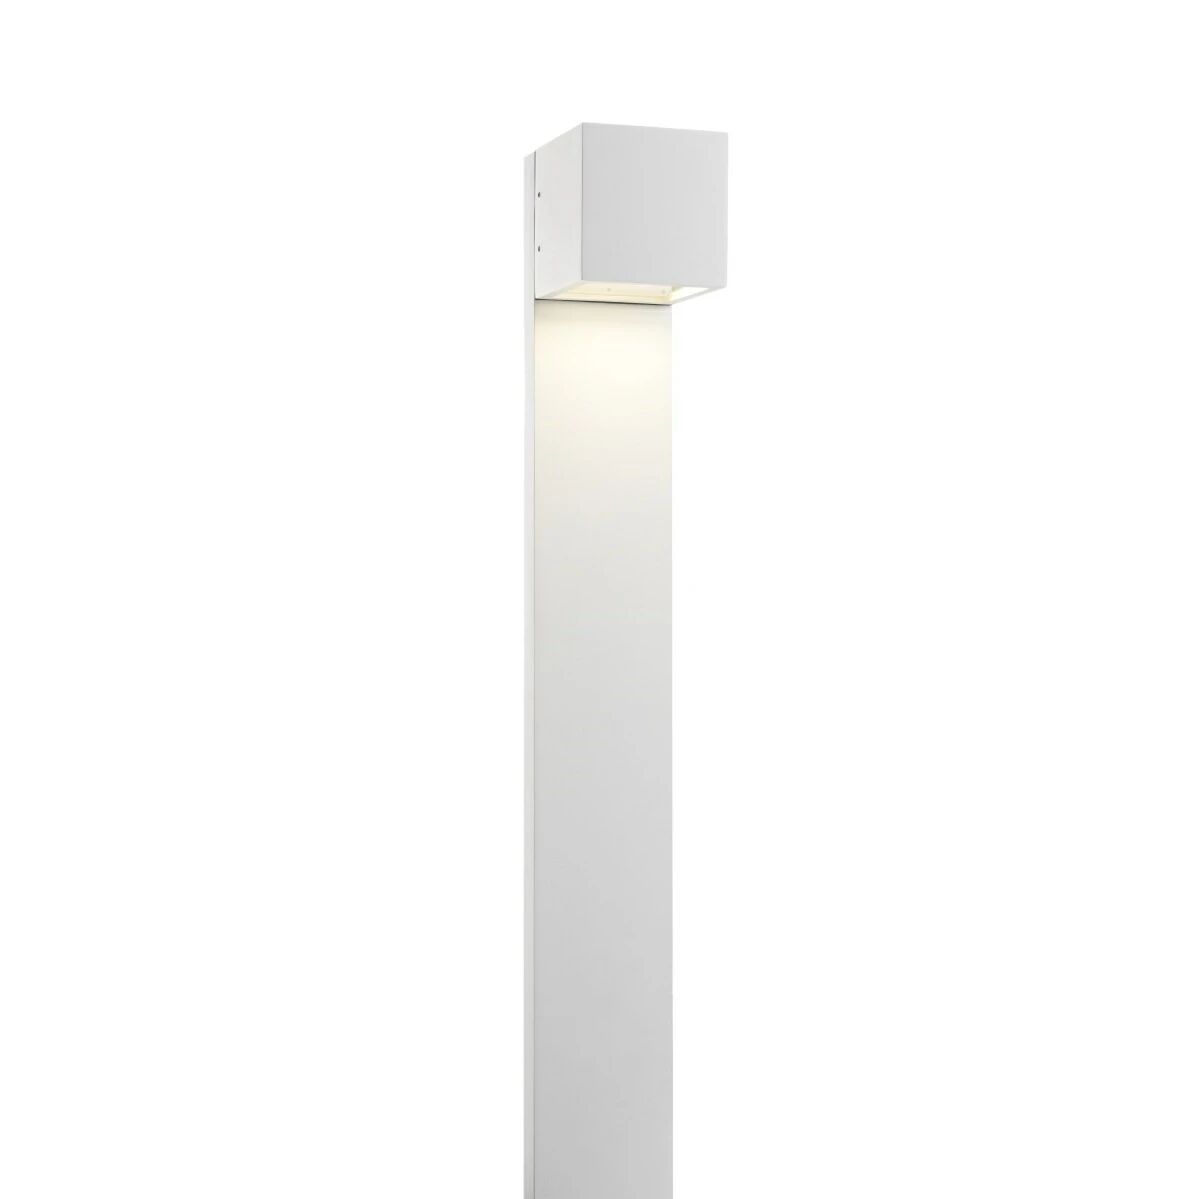 LIGHT-POINT Cube XL Stand LED Utendørslampe - LIGHT-POINT  hvit  Downlight